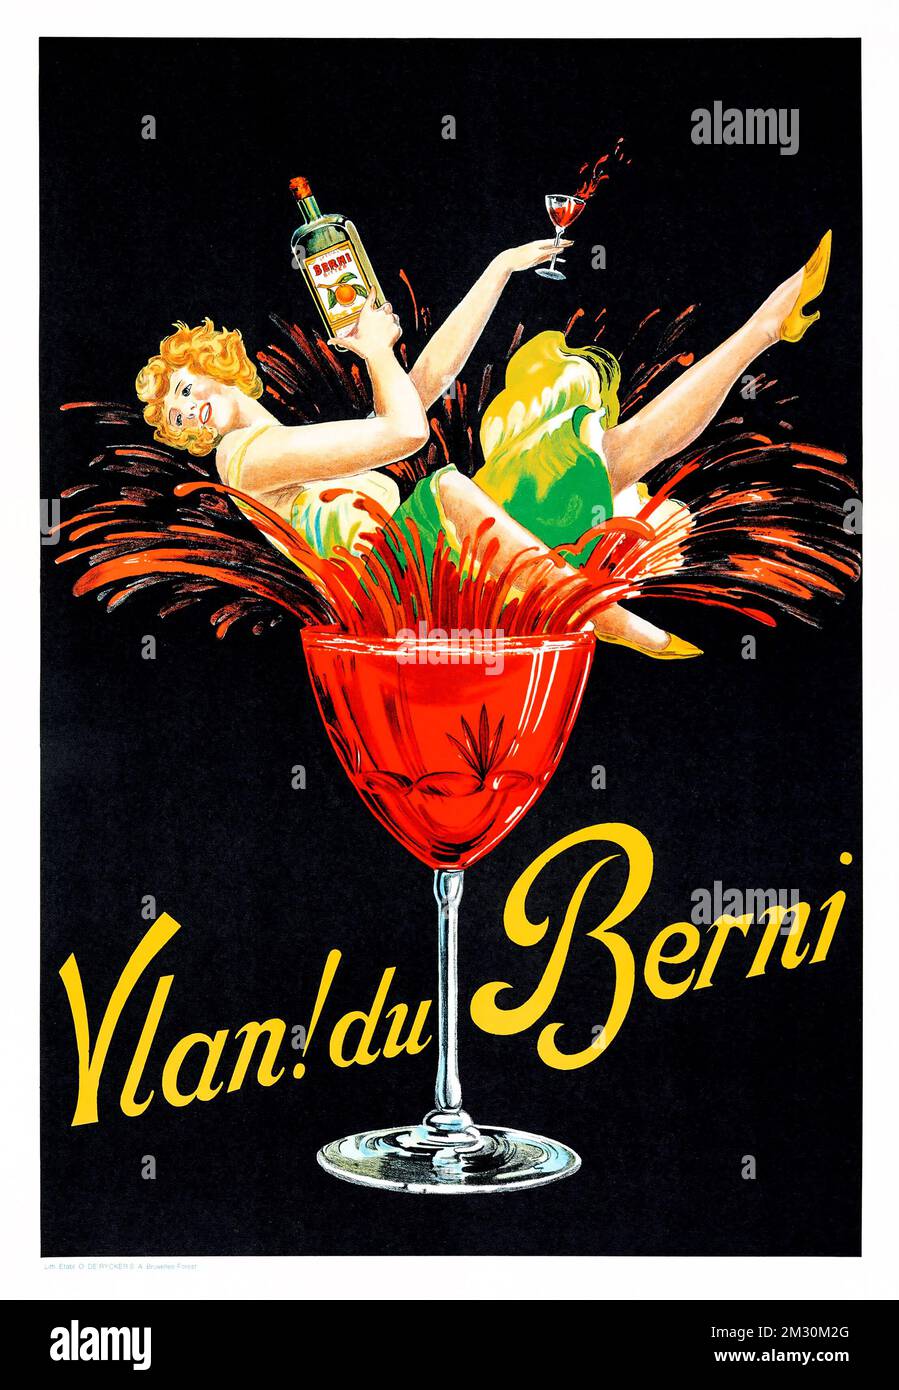 Poster pubblicitario per alcolici - VLAN du Berni Bitter (c 1920s). Poster pubblicitario belga - stile Leonetto Cappiello. Artista sconosciuto. Foto Stock